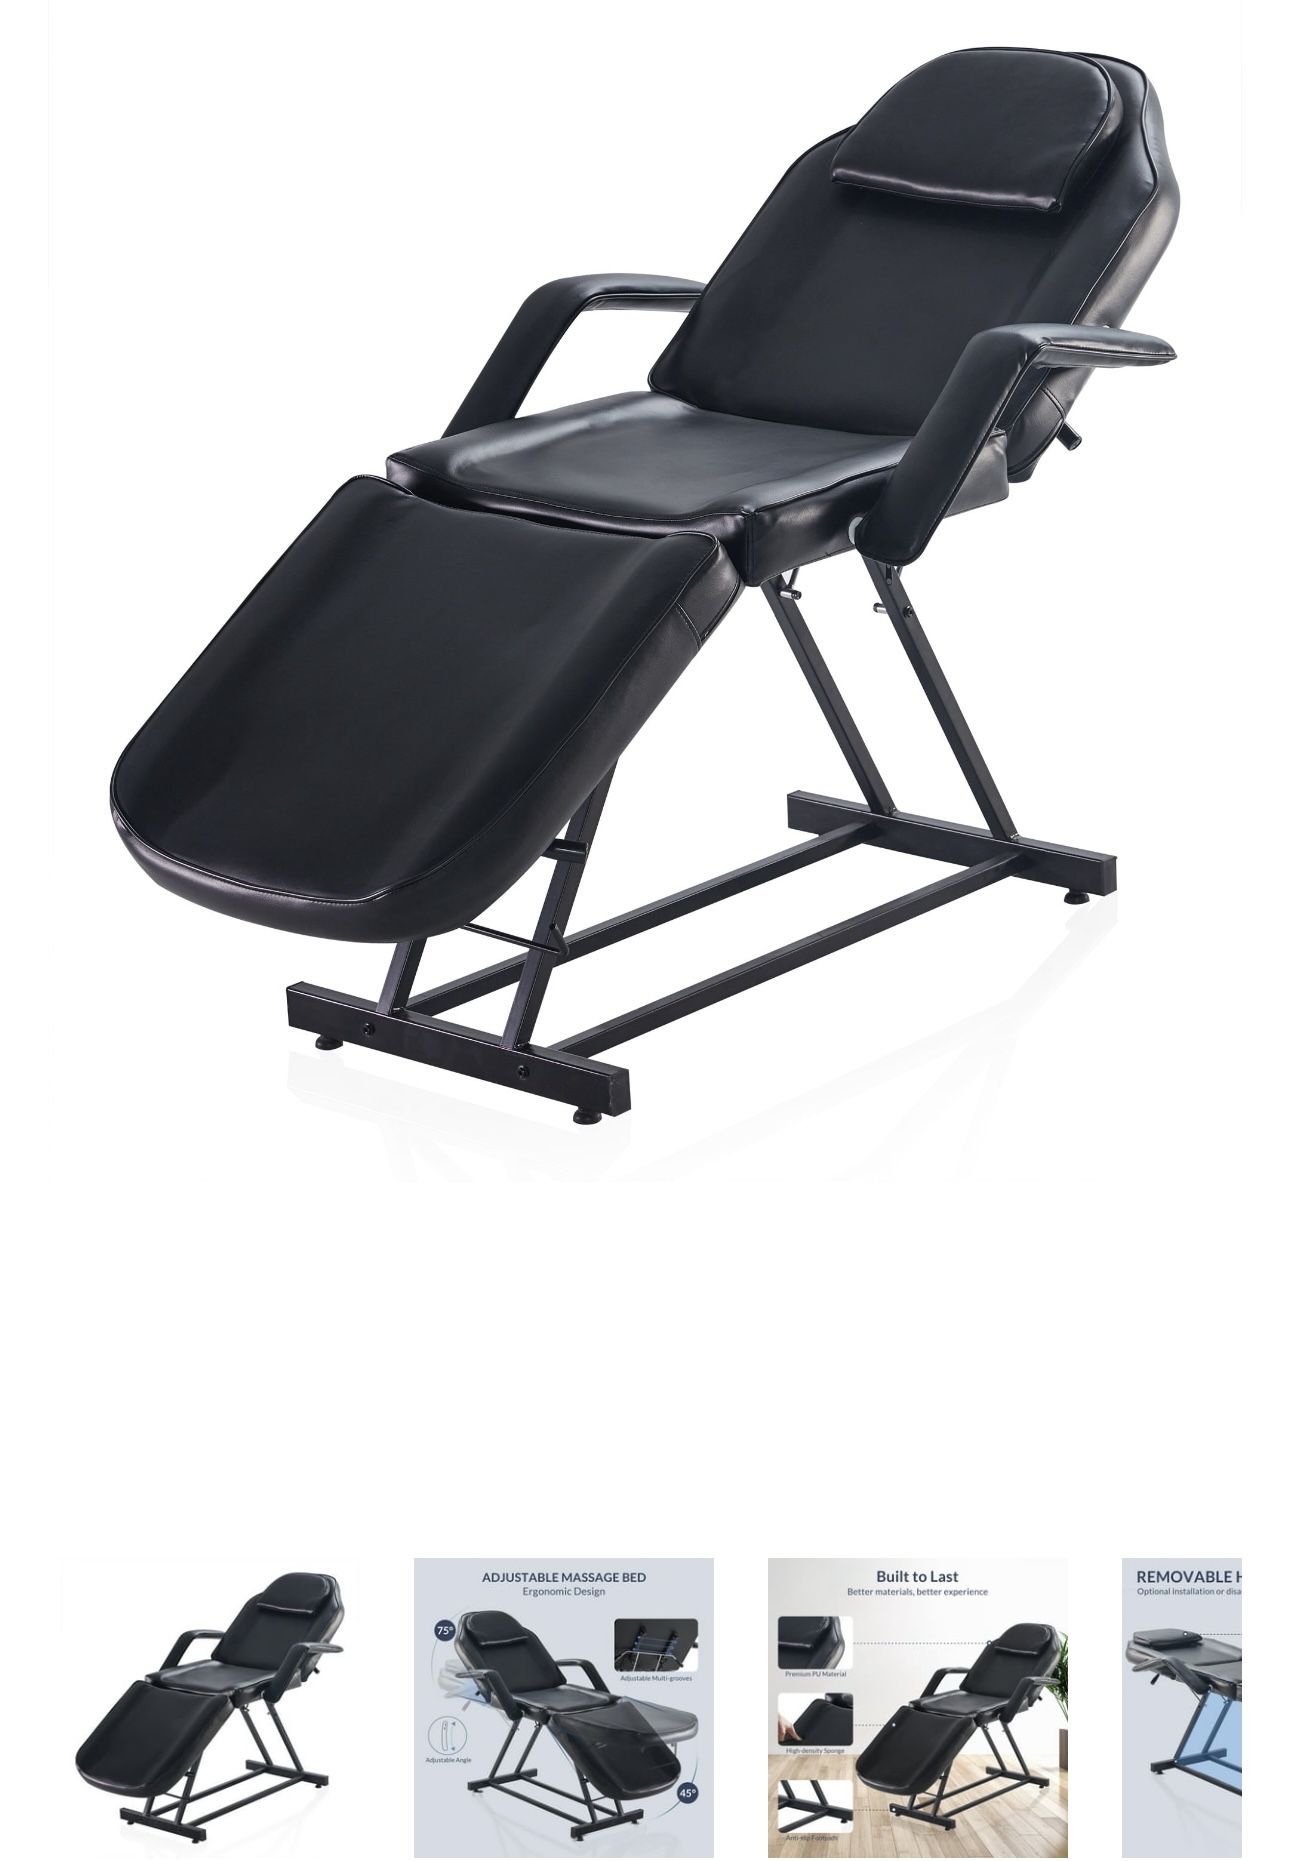 Professional Multi-purpose Salon Chair